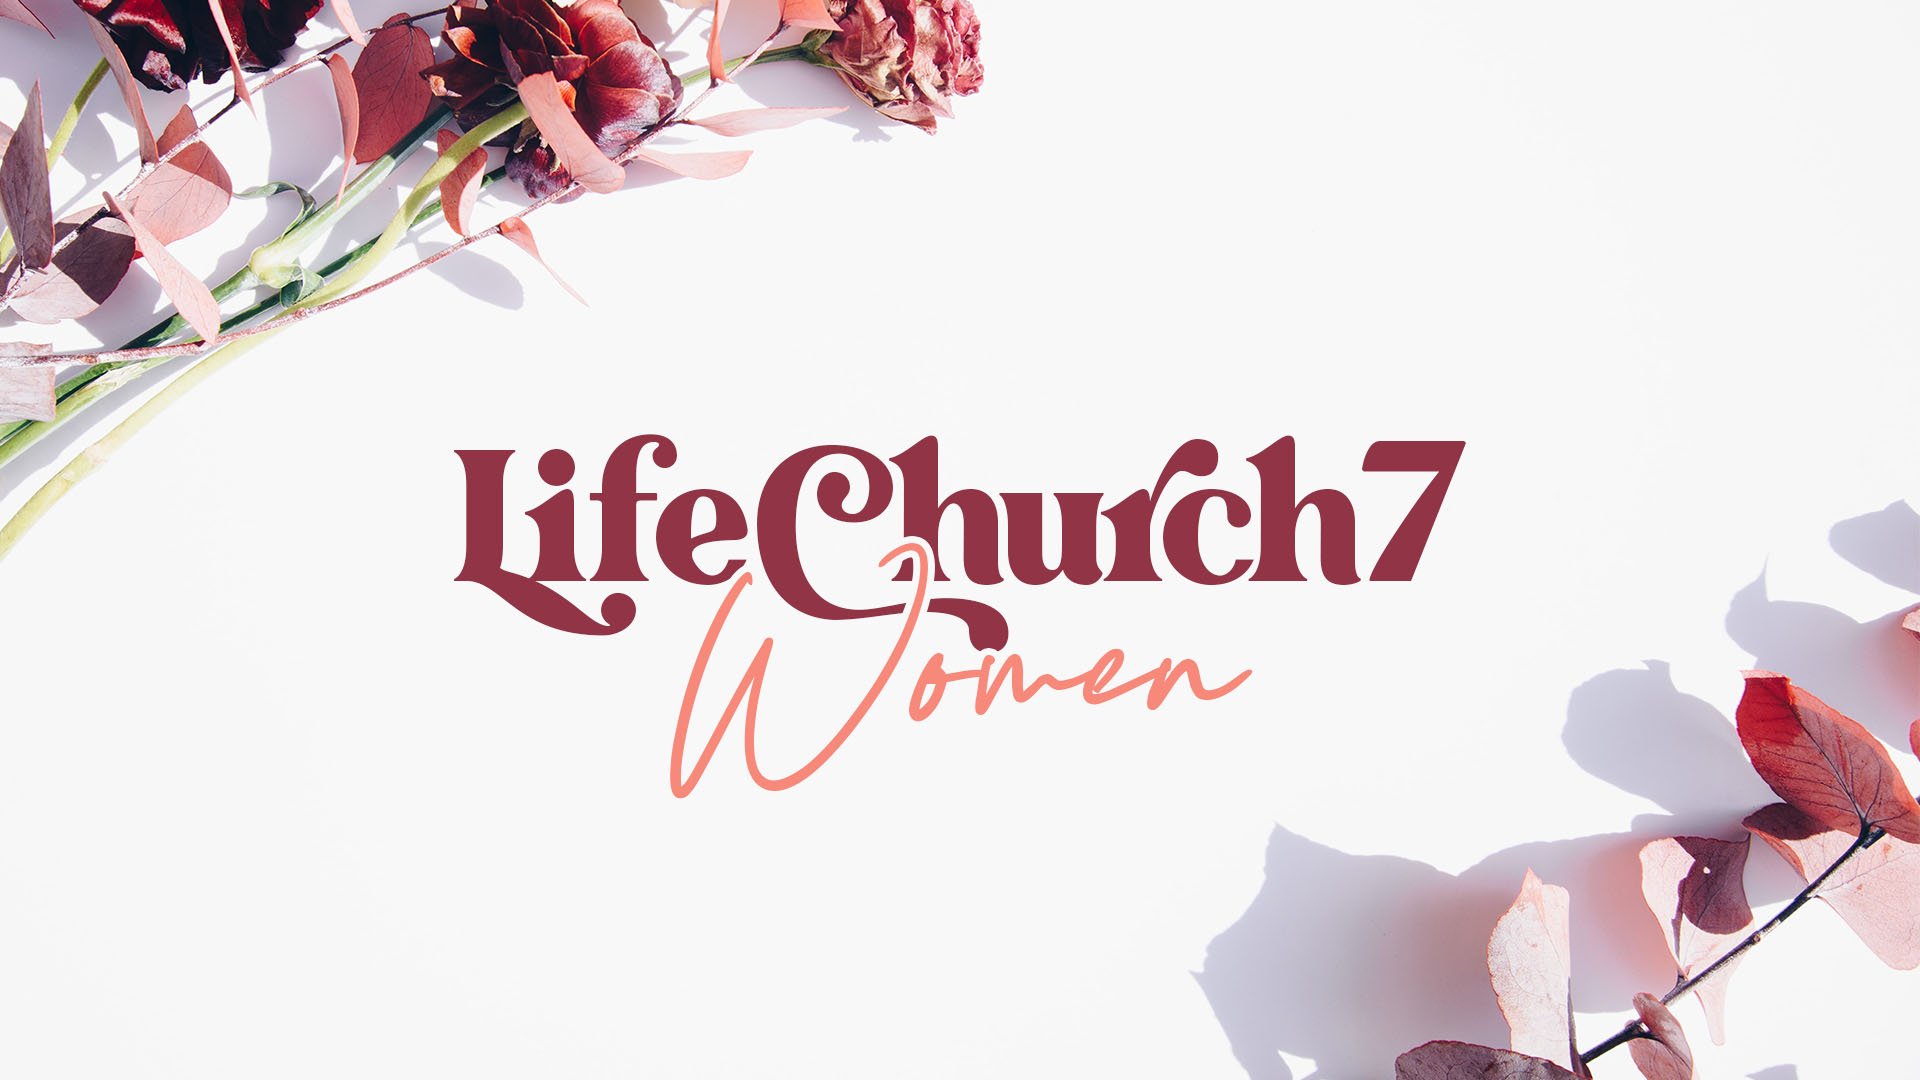 LIFECHURCH7 Women - HD Title Slide.jpg